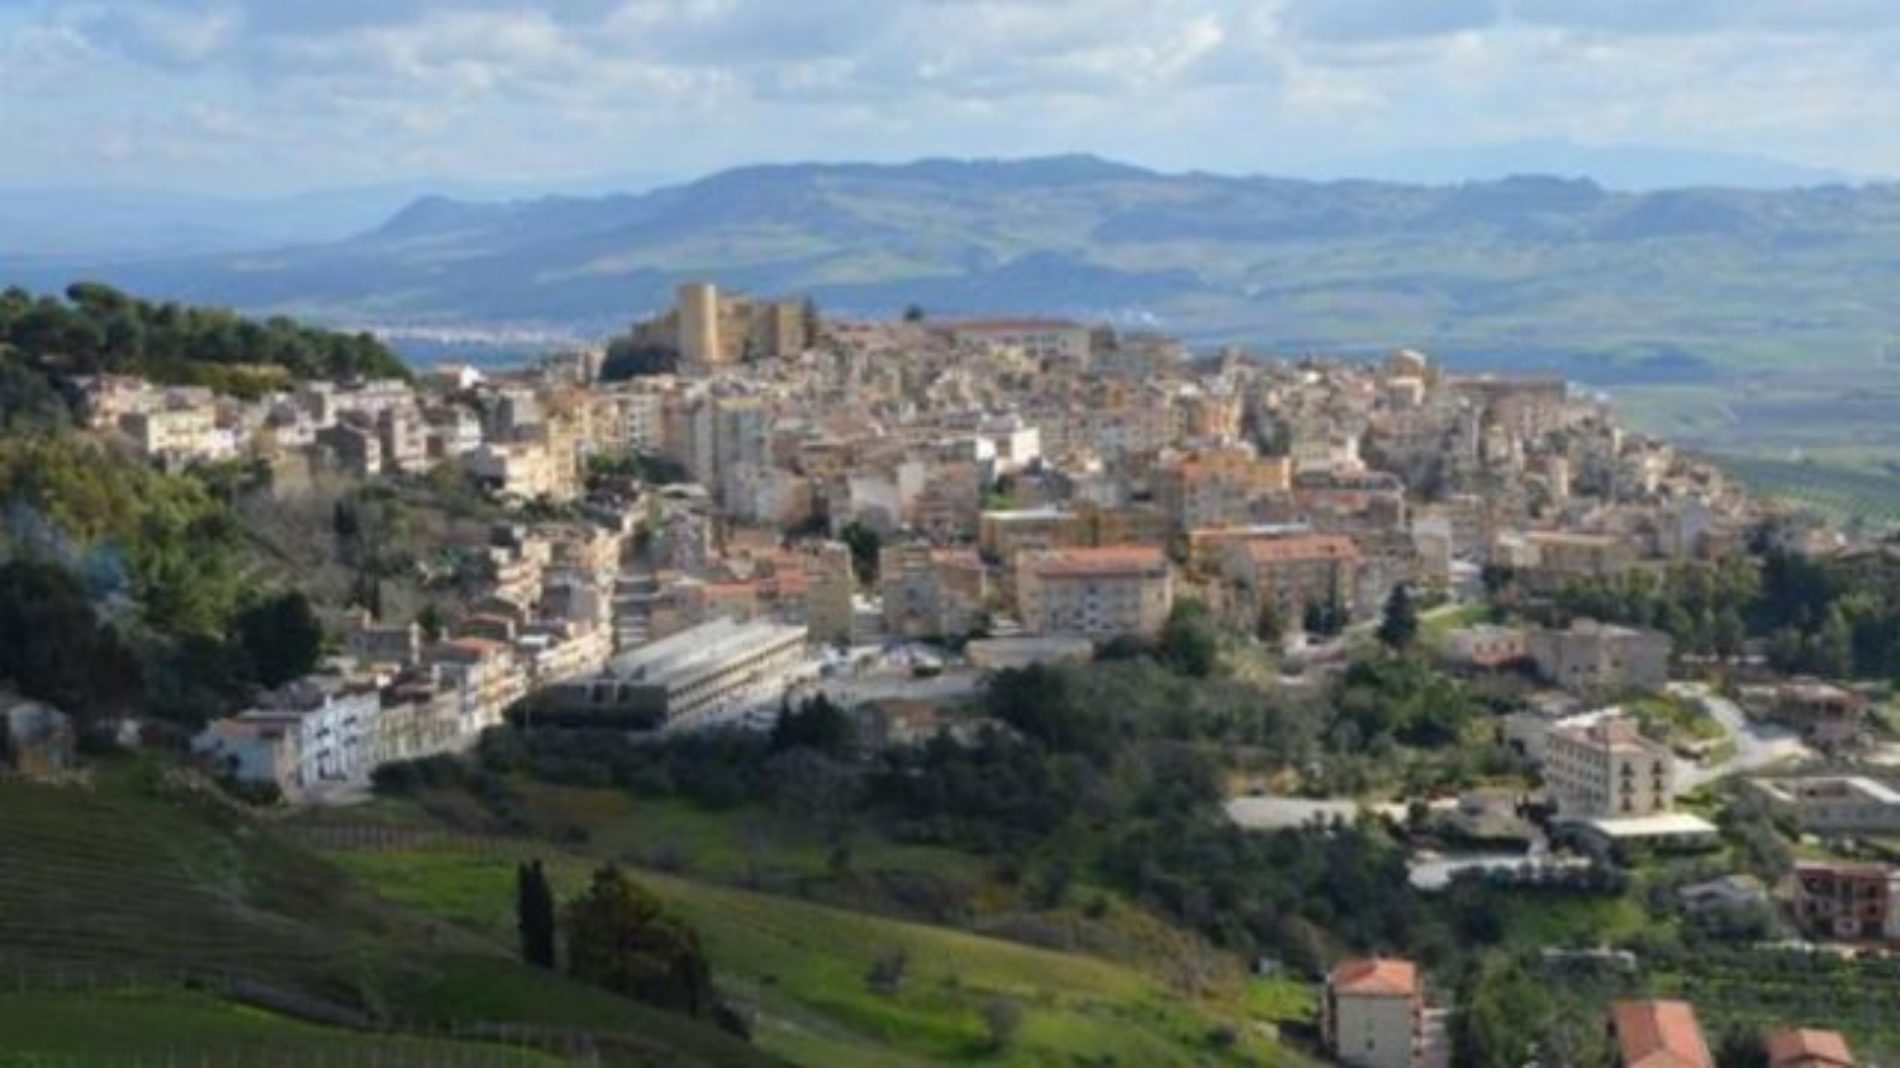 Covid-19, i 4 Comuni siciliani ‘zona rossa’ scrivono a Conte Salemi, Troina, Agira e Villafrati: “Servono risorse aggiuntive”